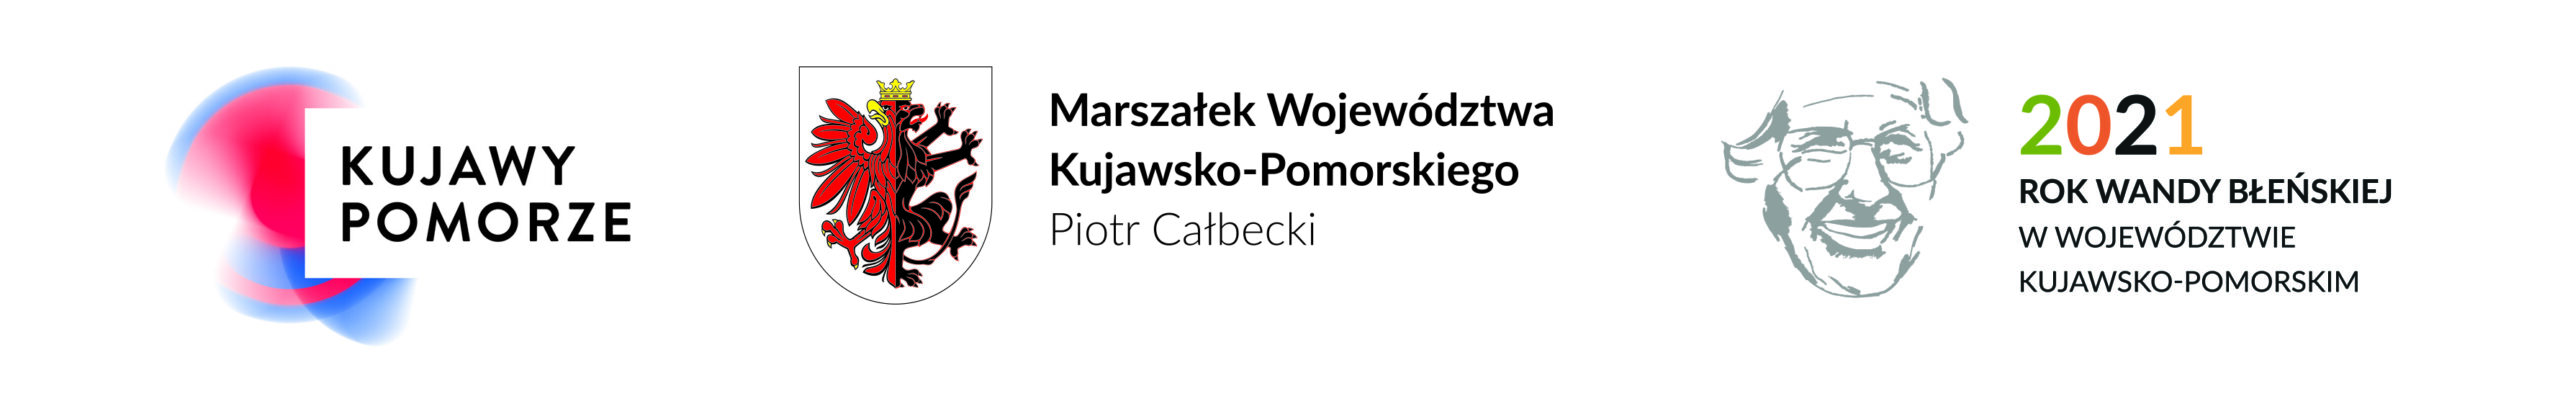 2021 - Rok Wandy Błeńskiej - belka Województwo Kujawsko-Pomorskie